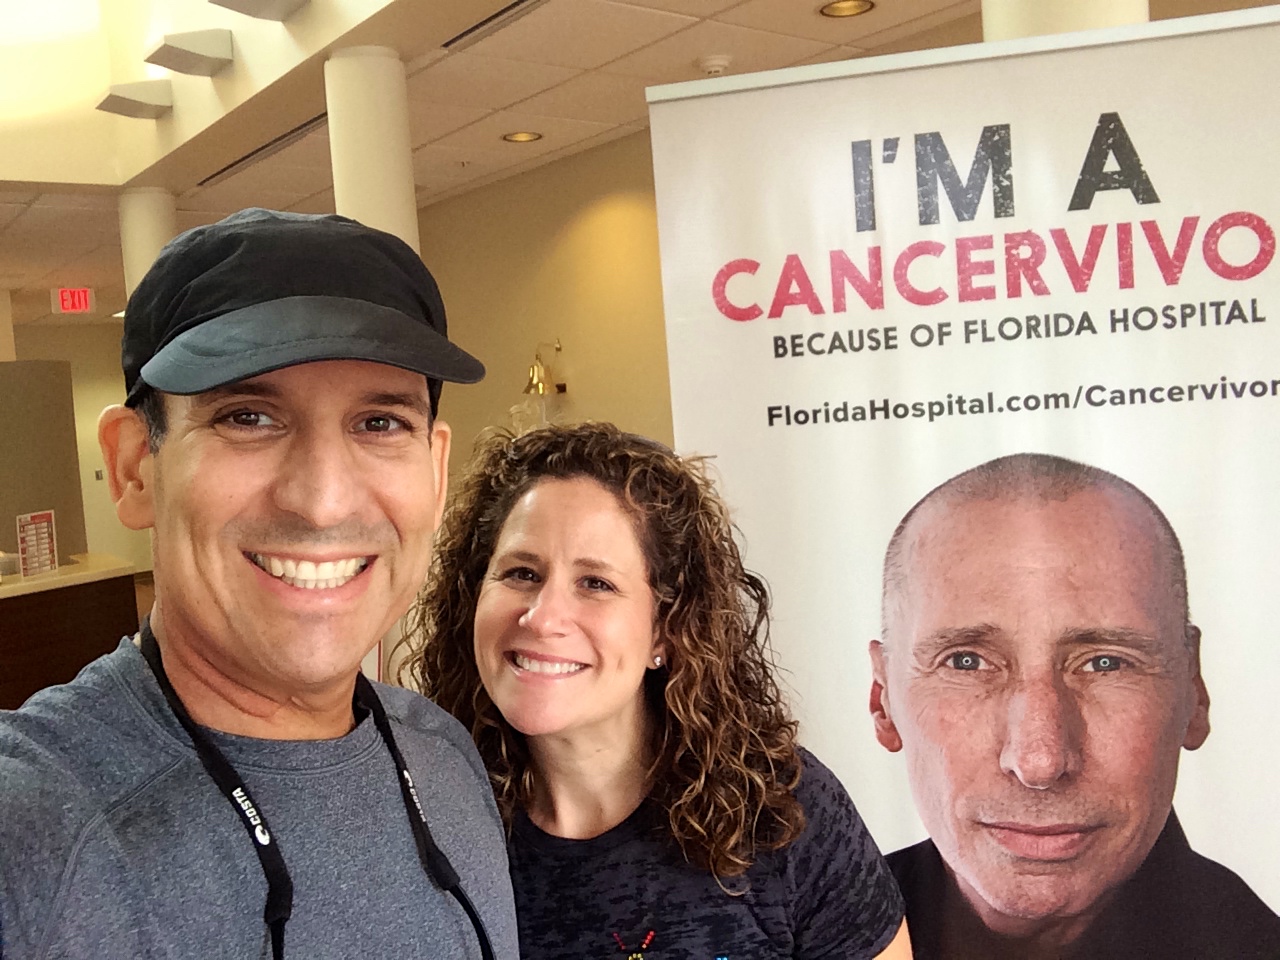 Jason Mendelsohn and wife selfie in front of 'I'm a Cancervivor" banner